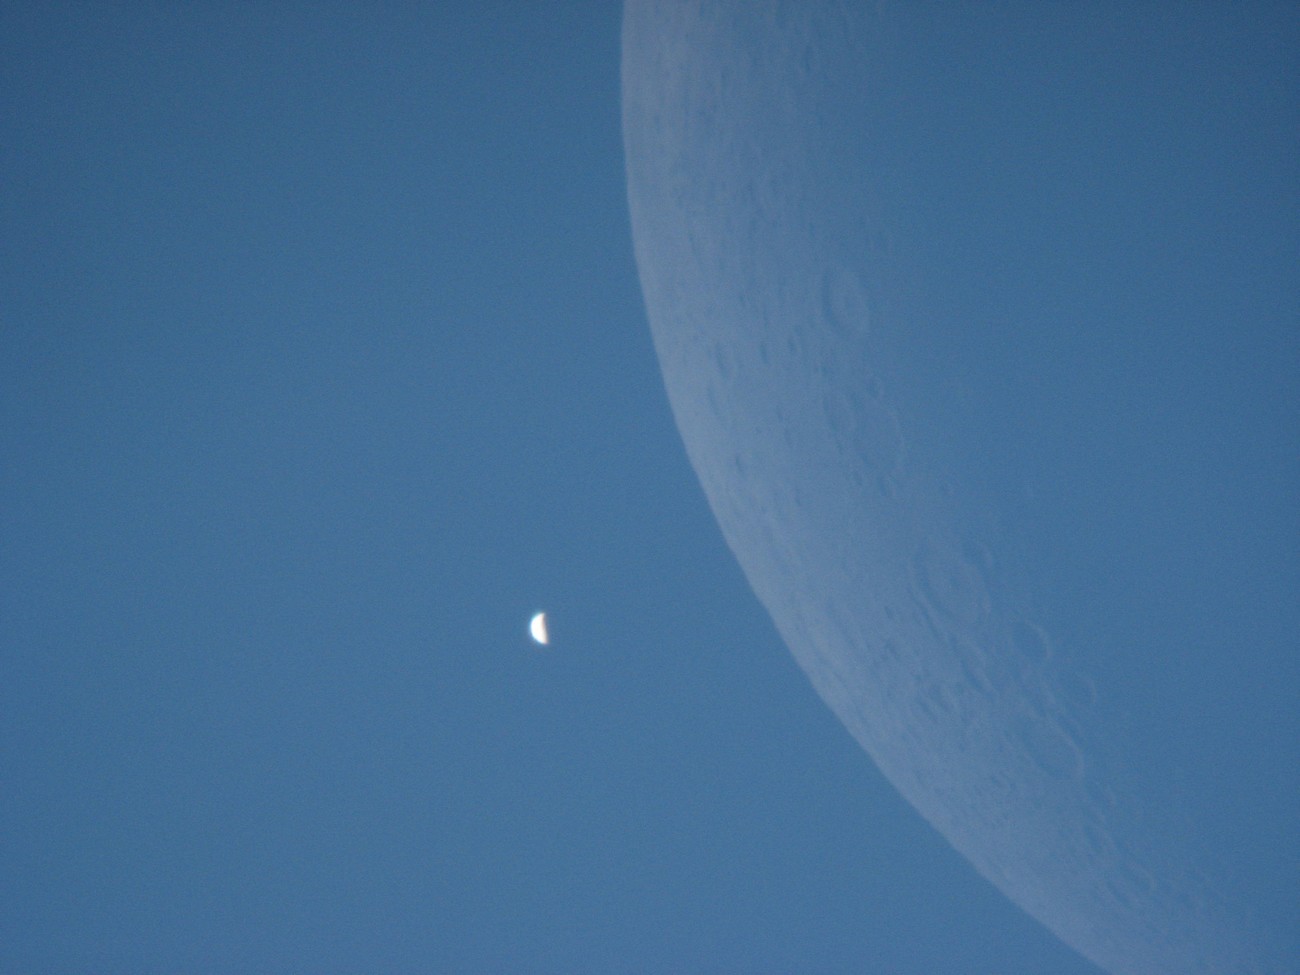 Le croissant de Vénus photographié en plein jour le 18 juin 2007 après son passage derrière la Lune. © Christophe Guesdon/Collège Léo Drouyn